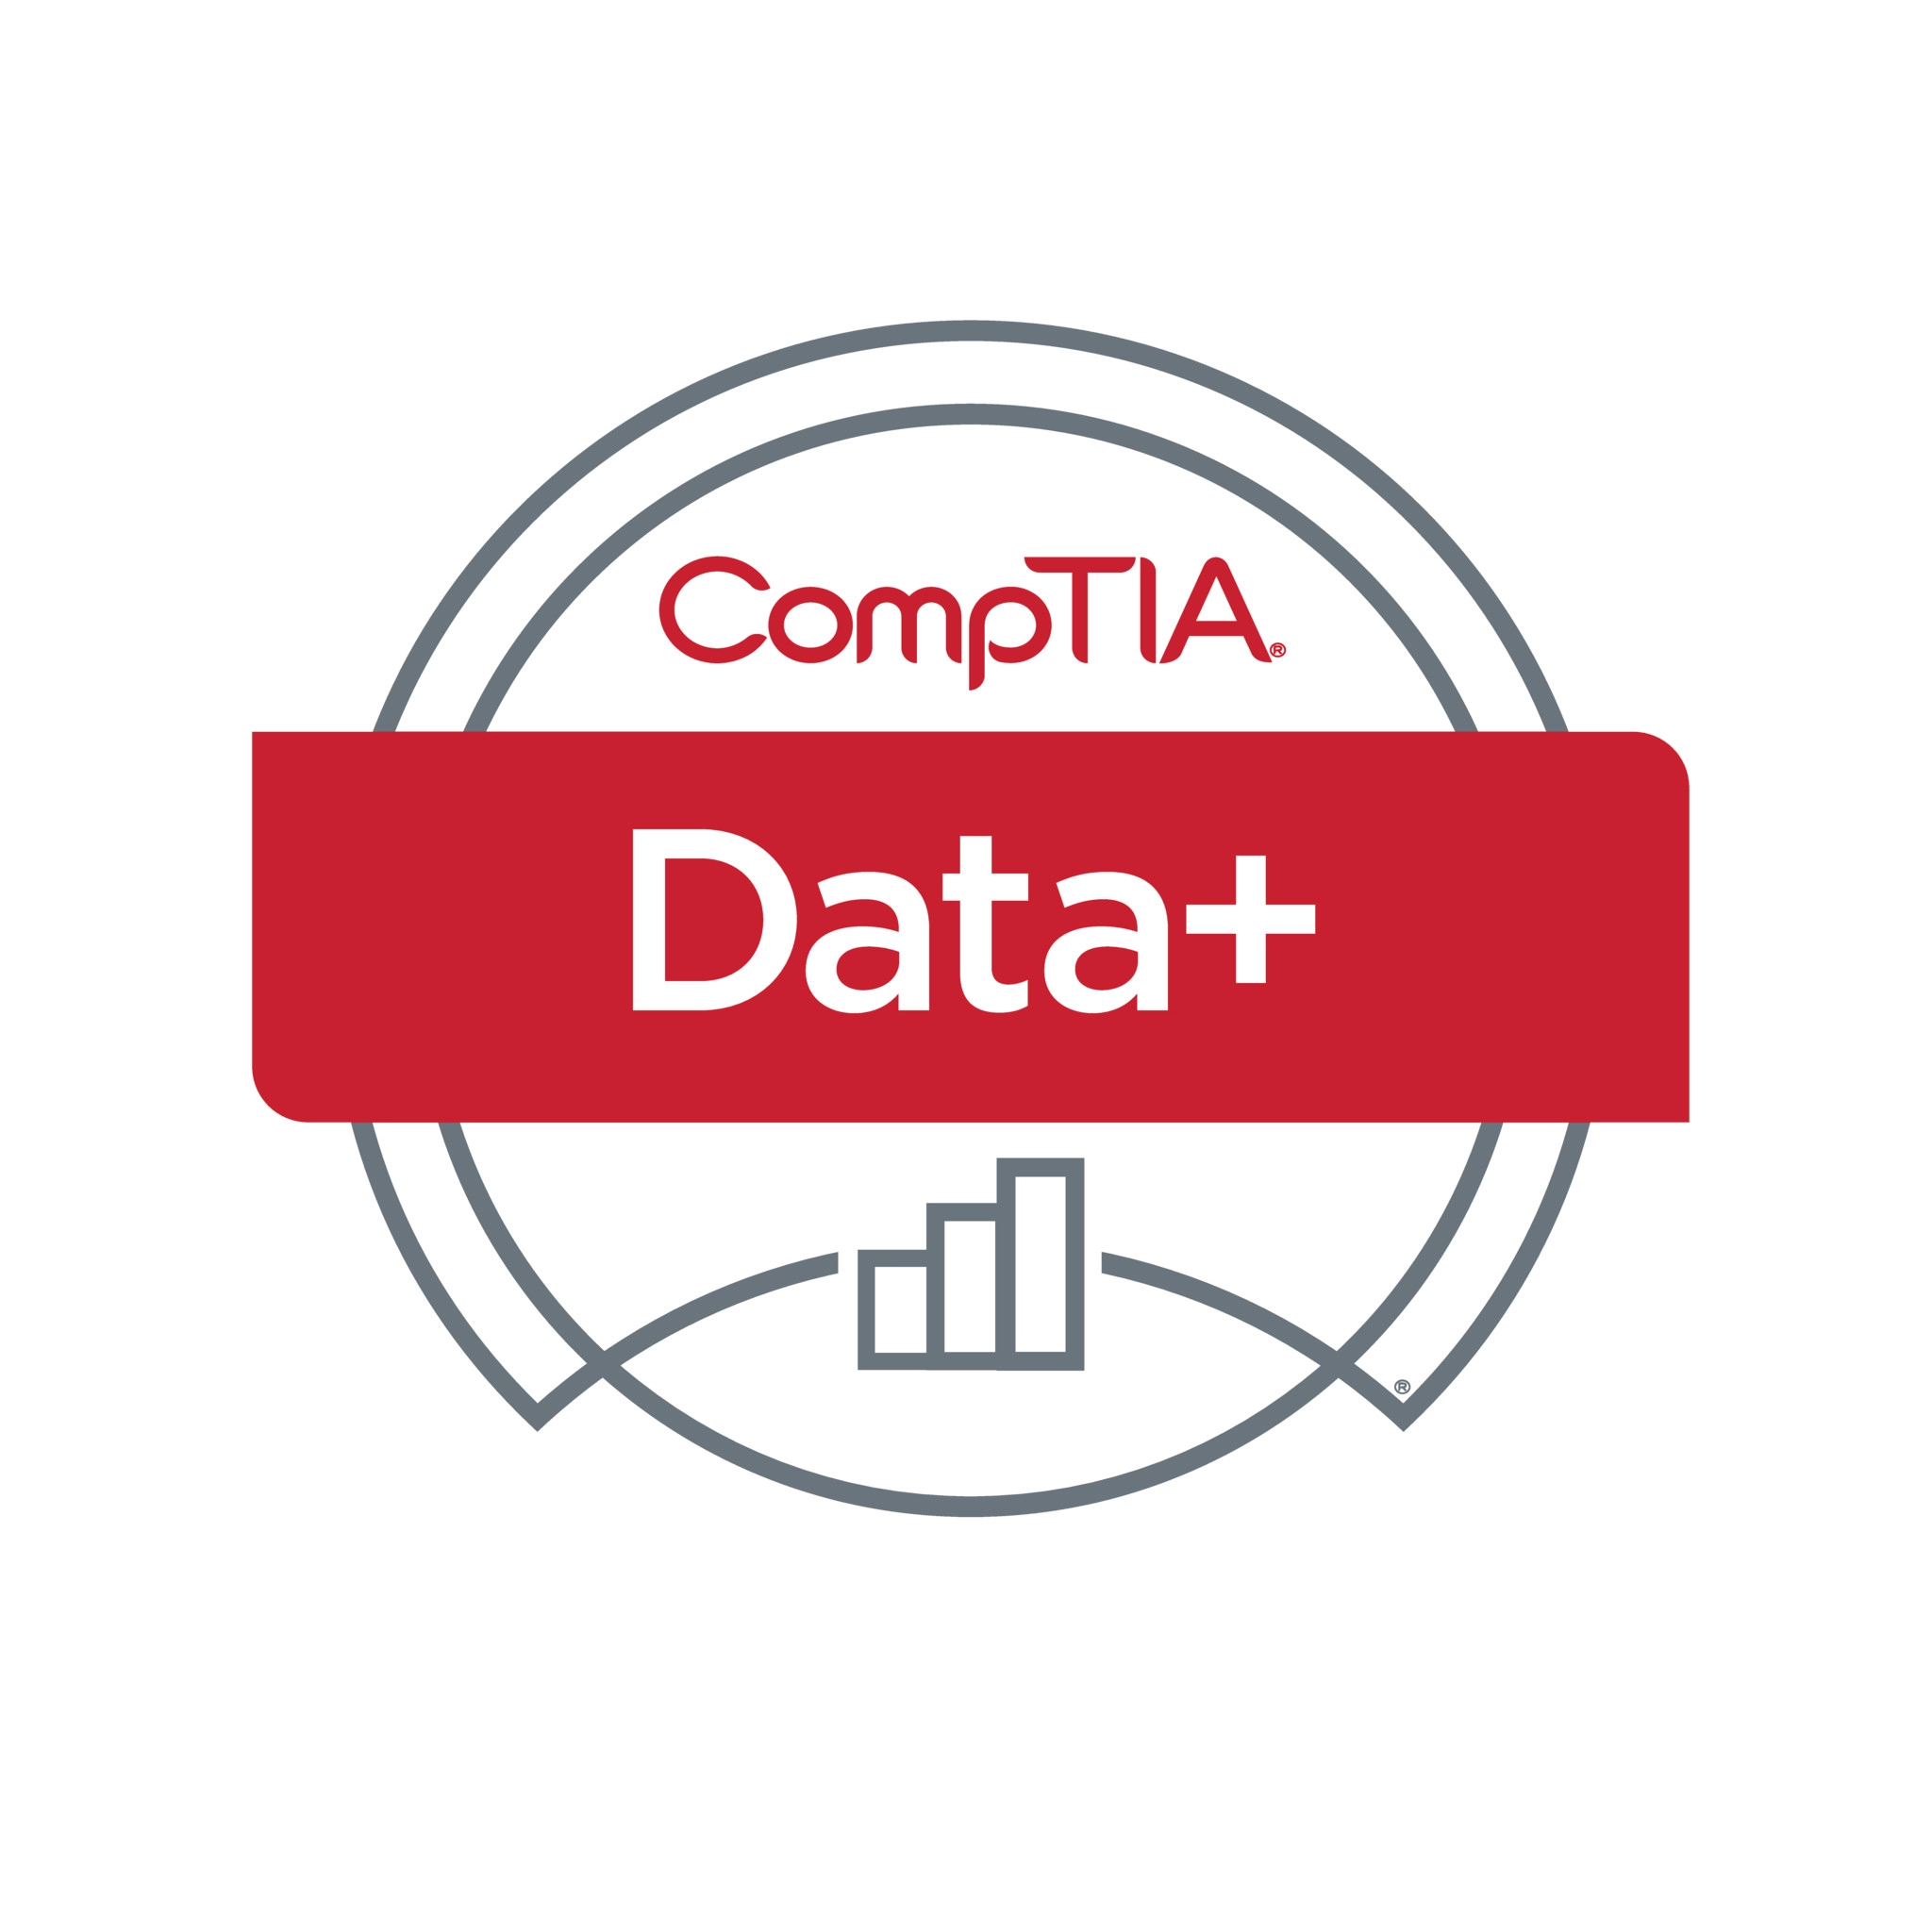 Cours de formation et certification CompTIA Data+